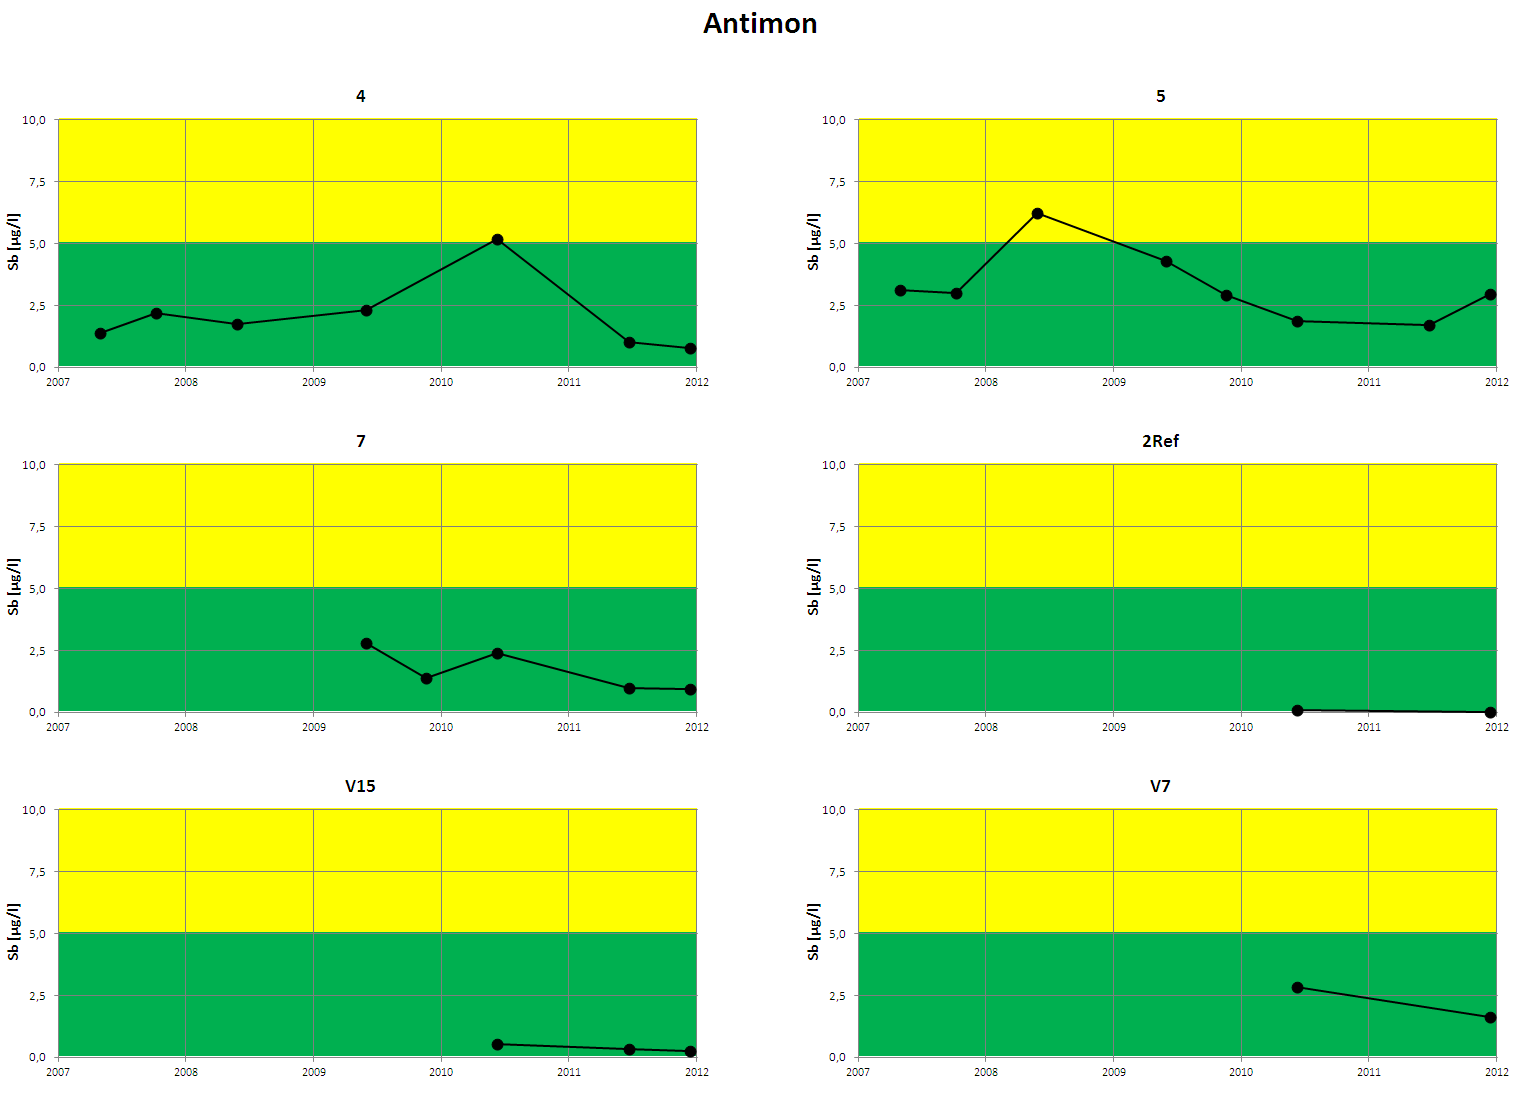 Figur 5. Analyseresultater for antimon i perioden 2007-2011. Før 2010 ble analyseresultater under deteksjonsgrensen (dg) rapportert som dg/2.